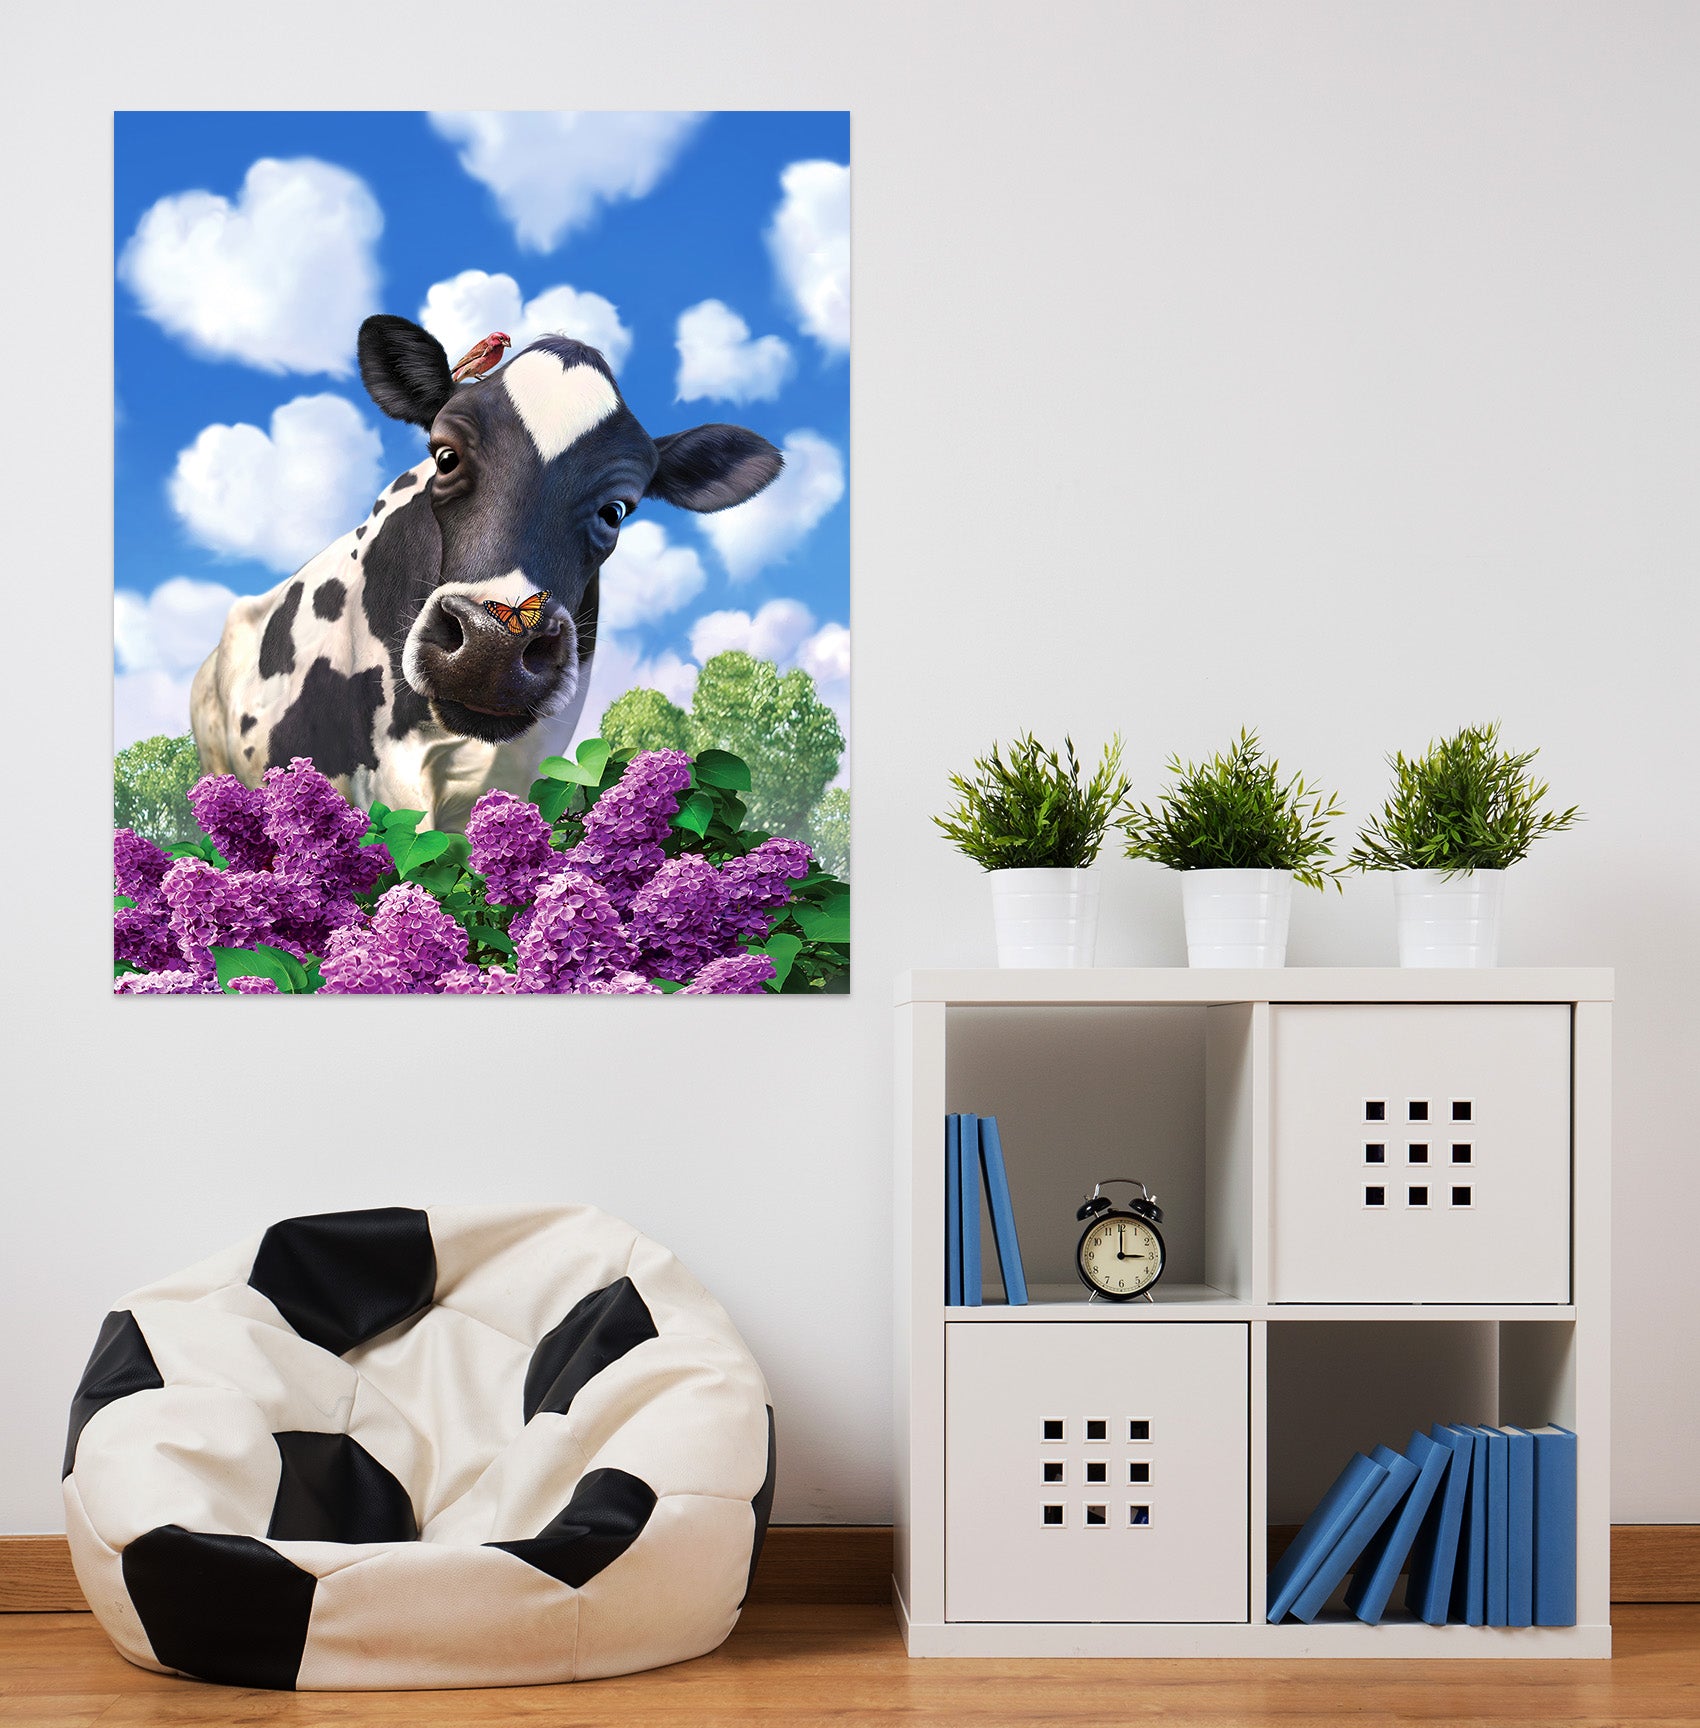 3D Cows 85196 Jerry LoFaro Wall Sticker